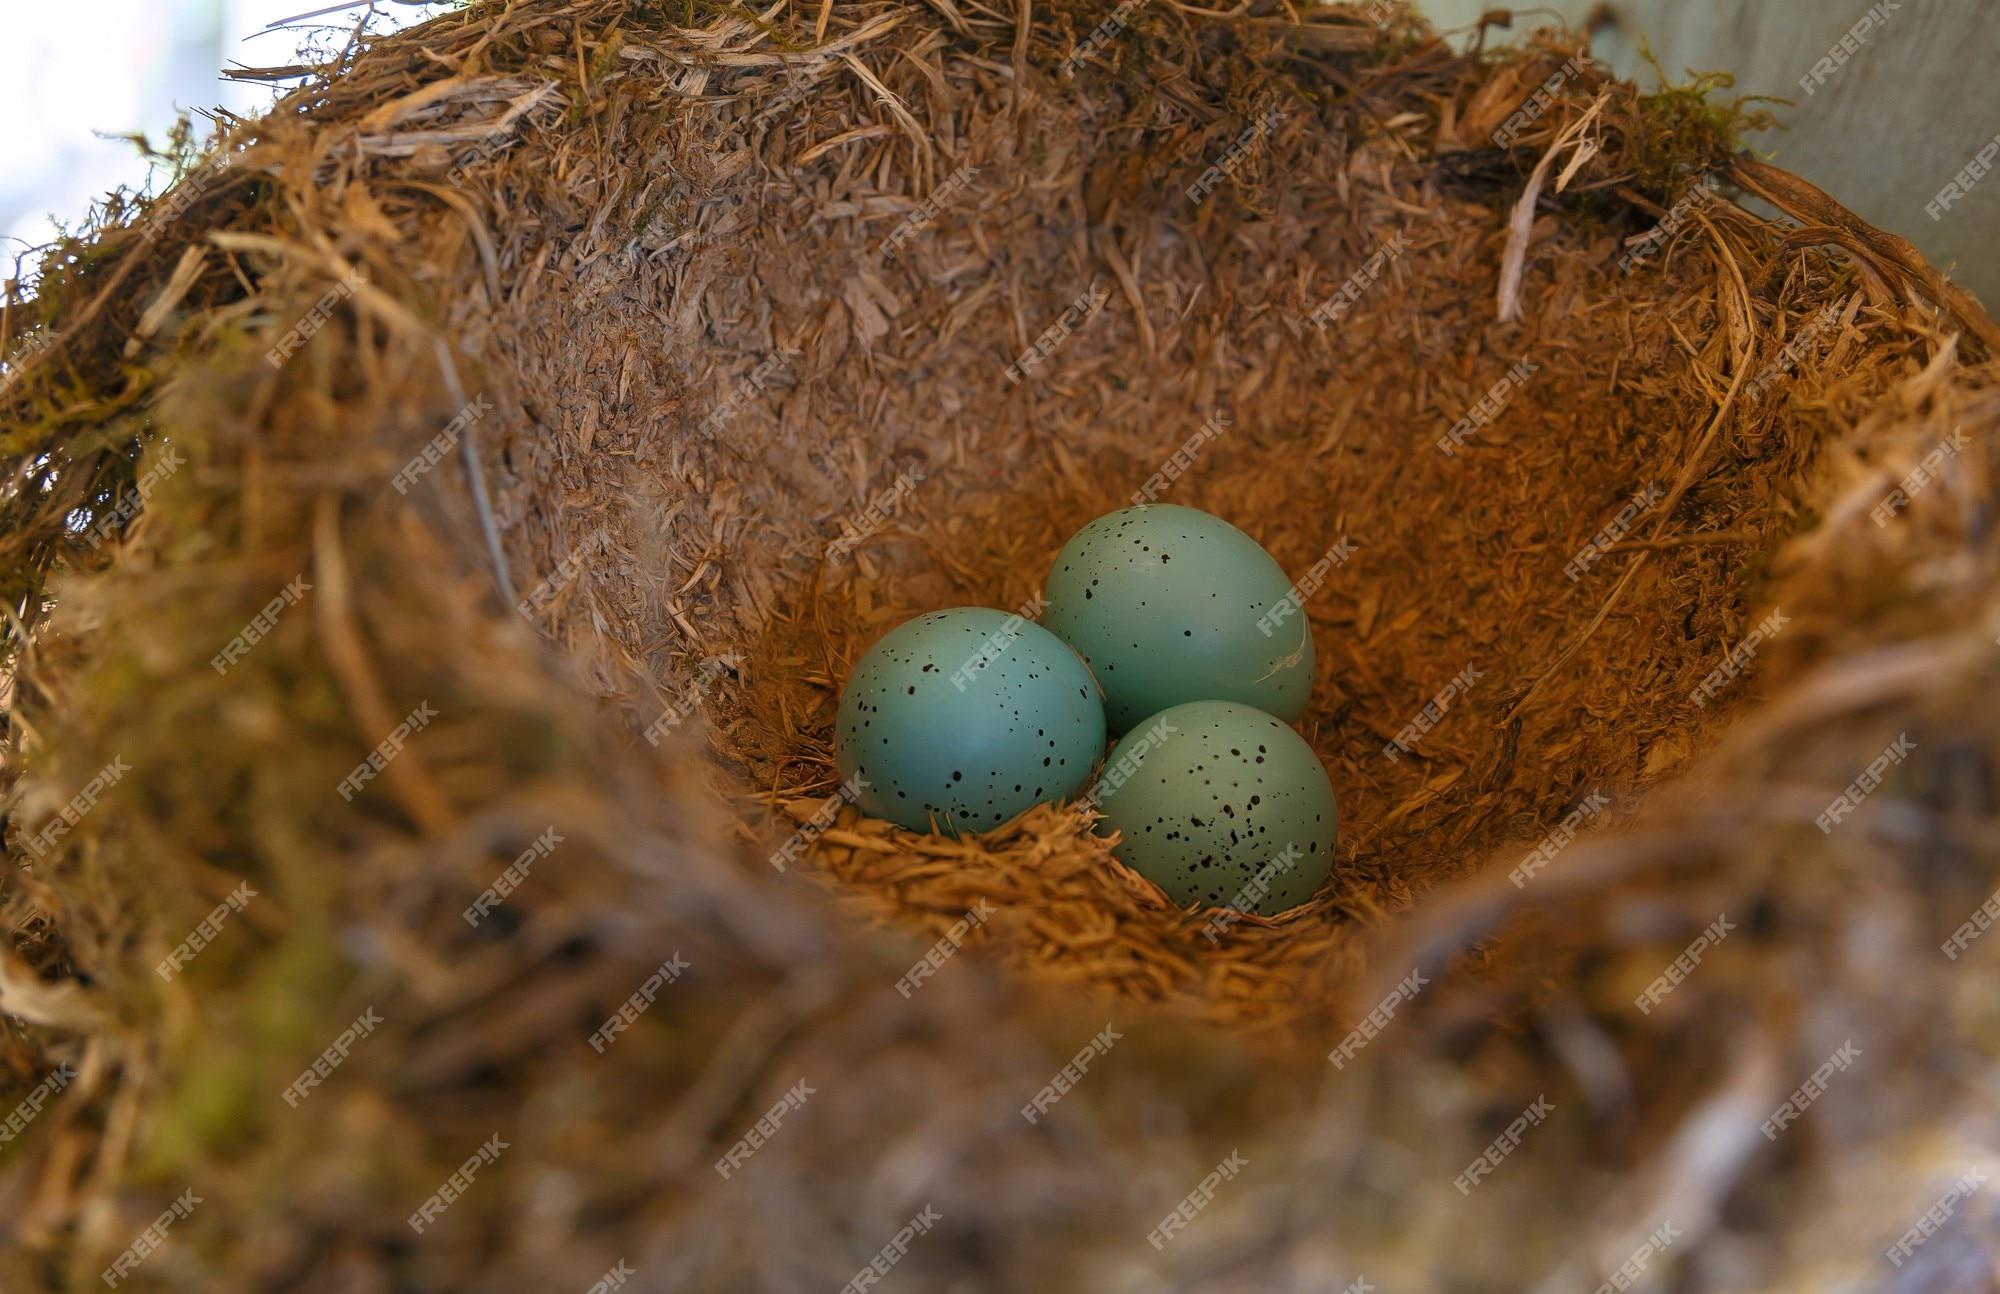 Afslachten Reizen spiraal Het nest van de merel met drie blauwe eieren | Premium Foto